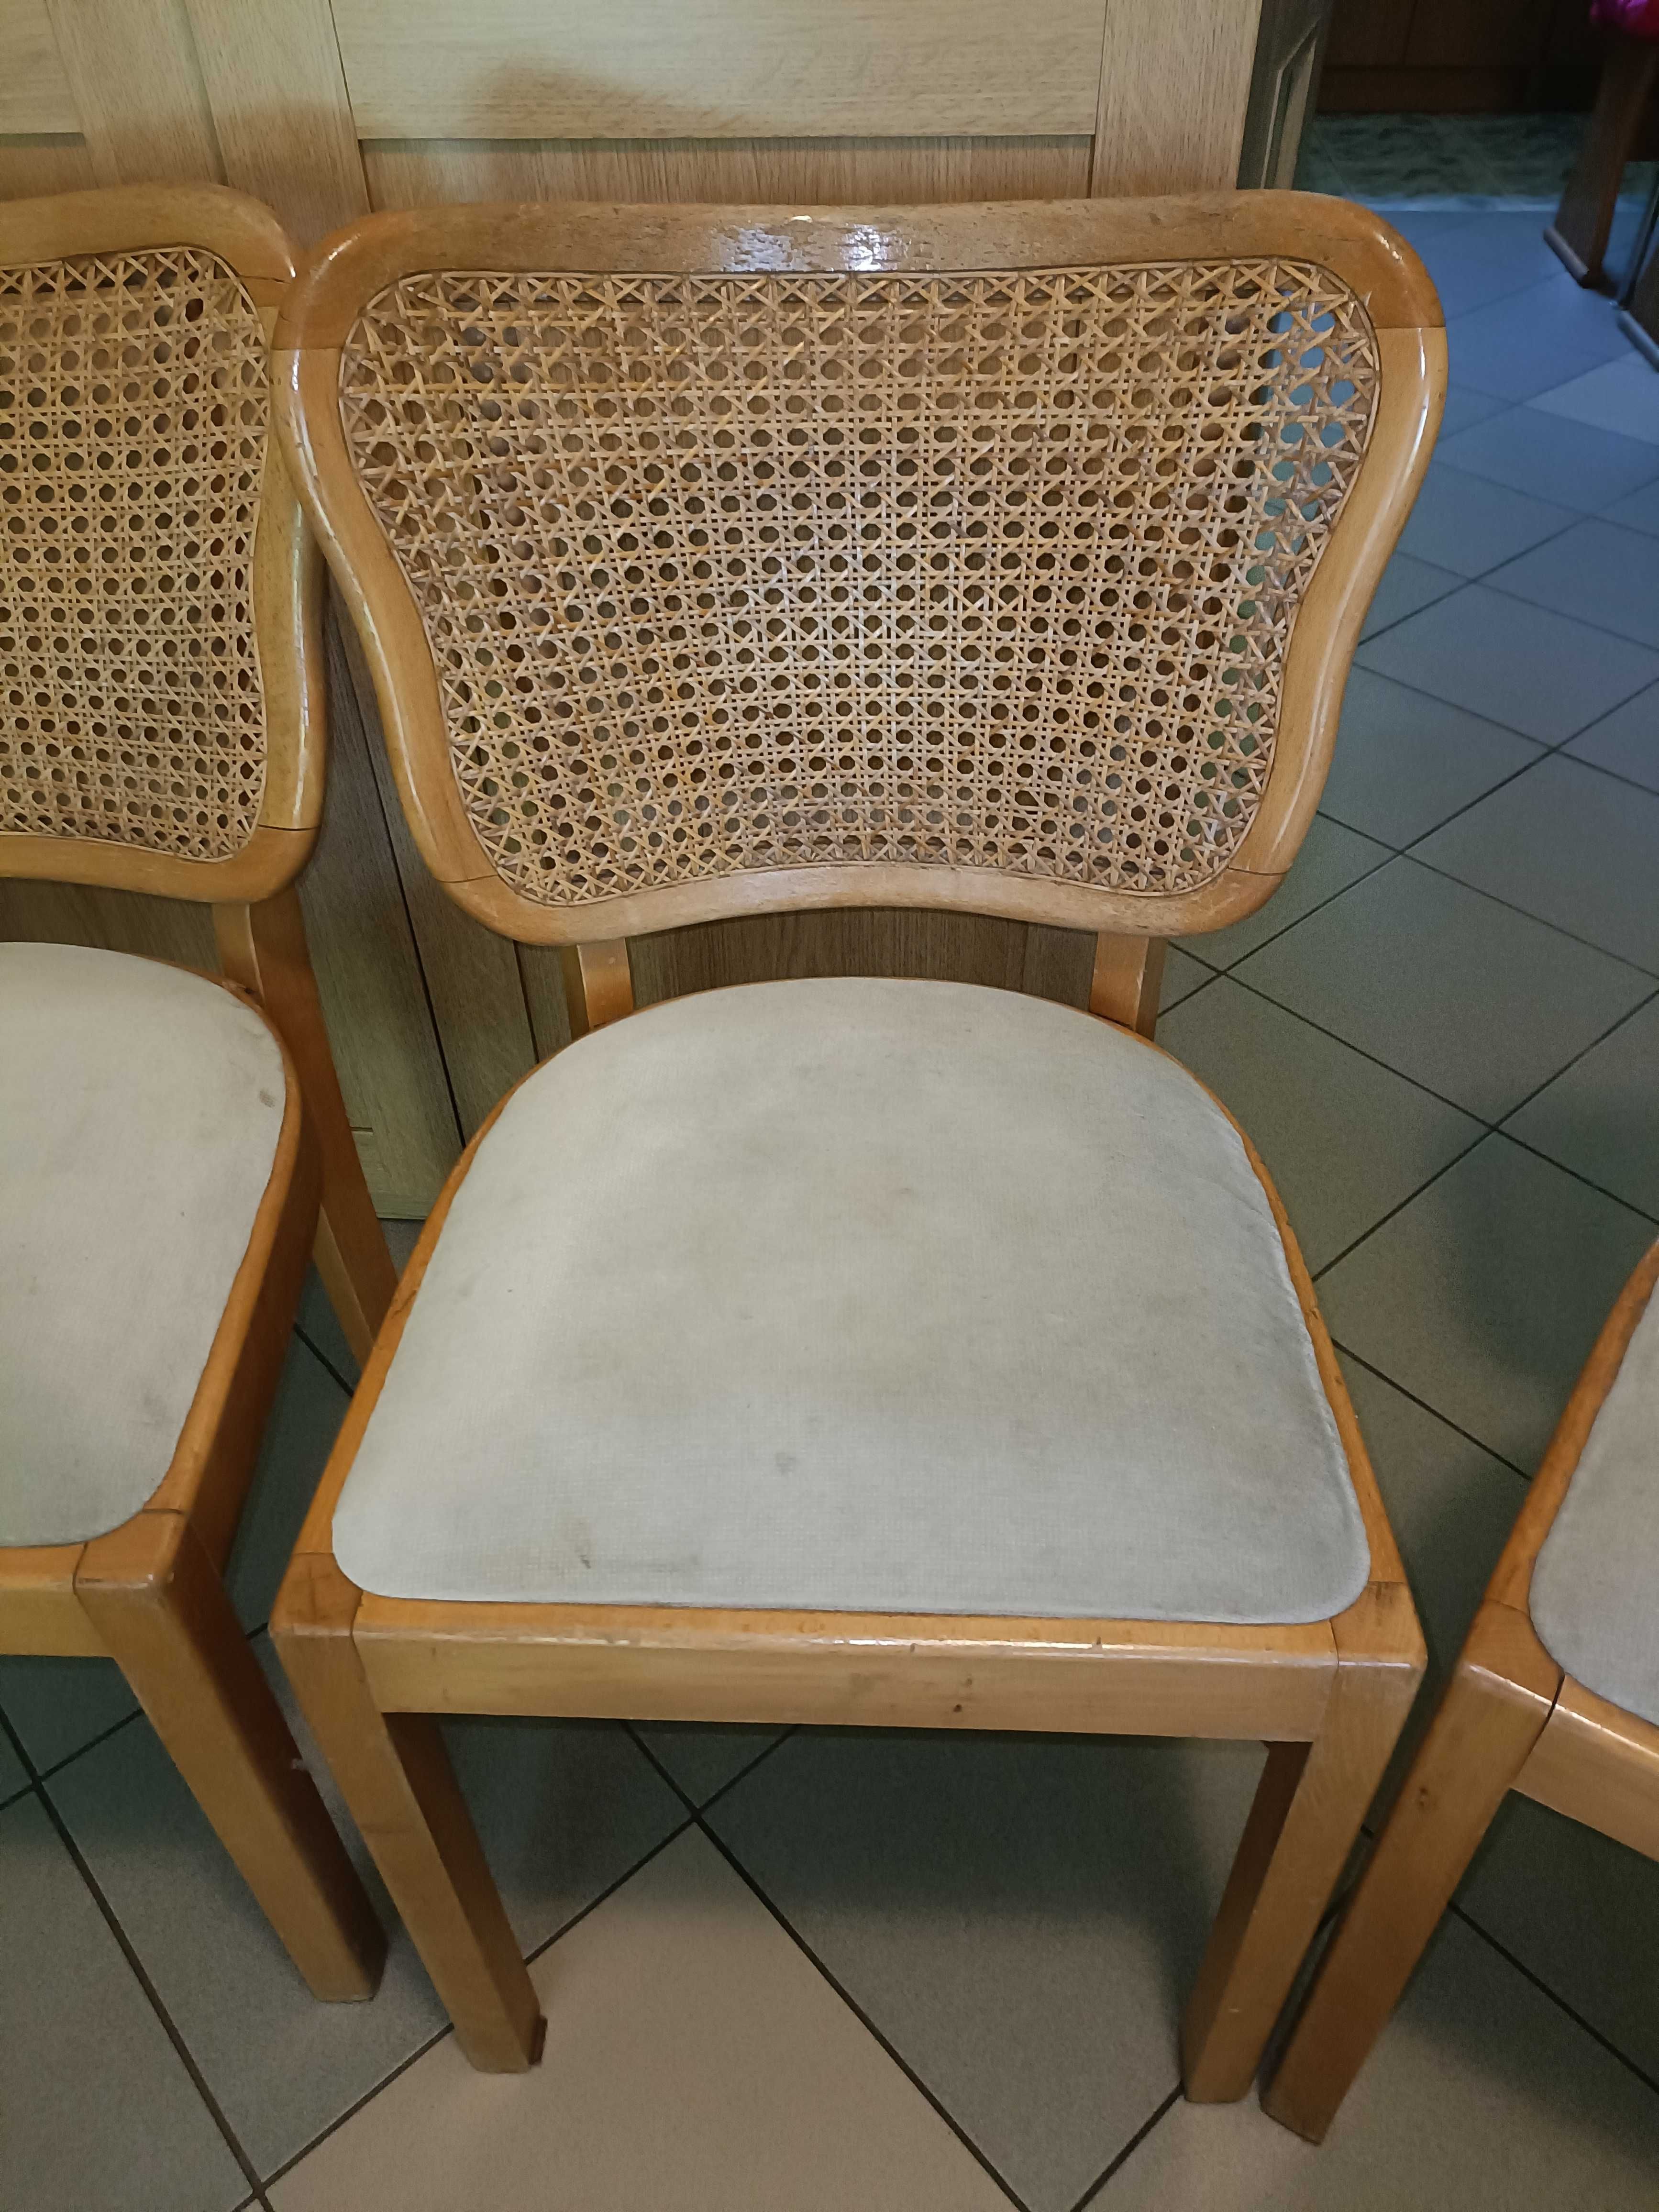 Krzesła wewnętrzne lub na taras 3szt